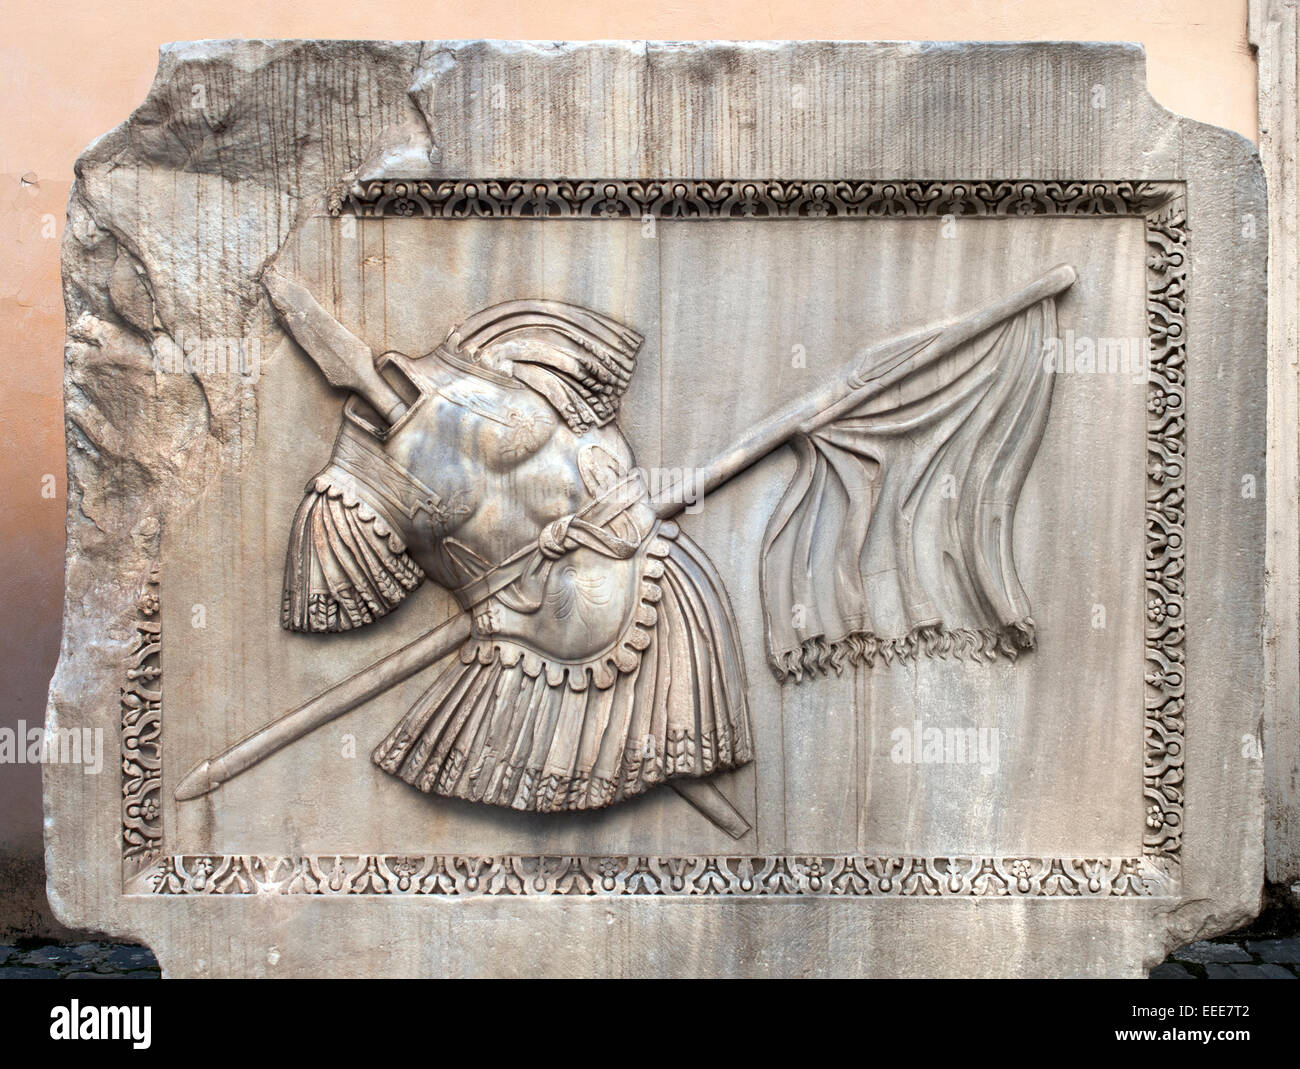 Erleichterung der Rüstung (Rüstung, Speeren und Flagge) - Palazzo dei Conservatori, römische Rom Capitoline Museum Italien Italienisch Stockfoto